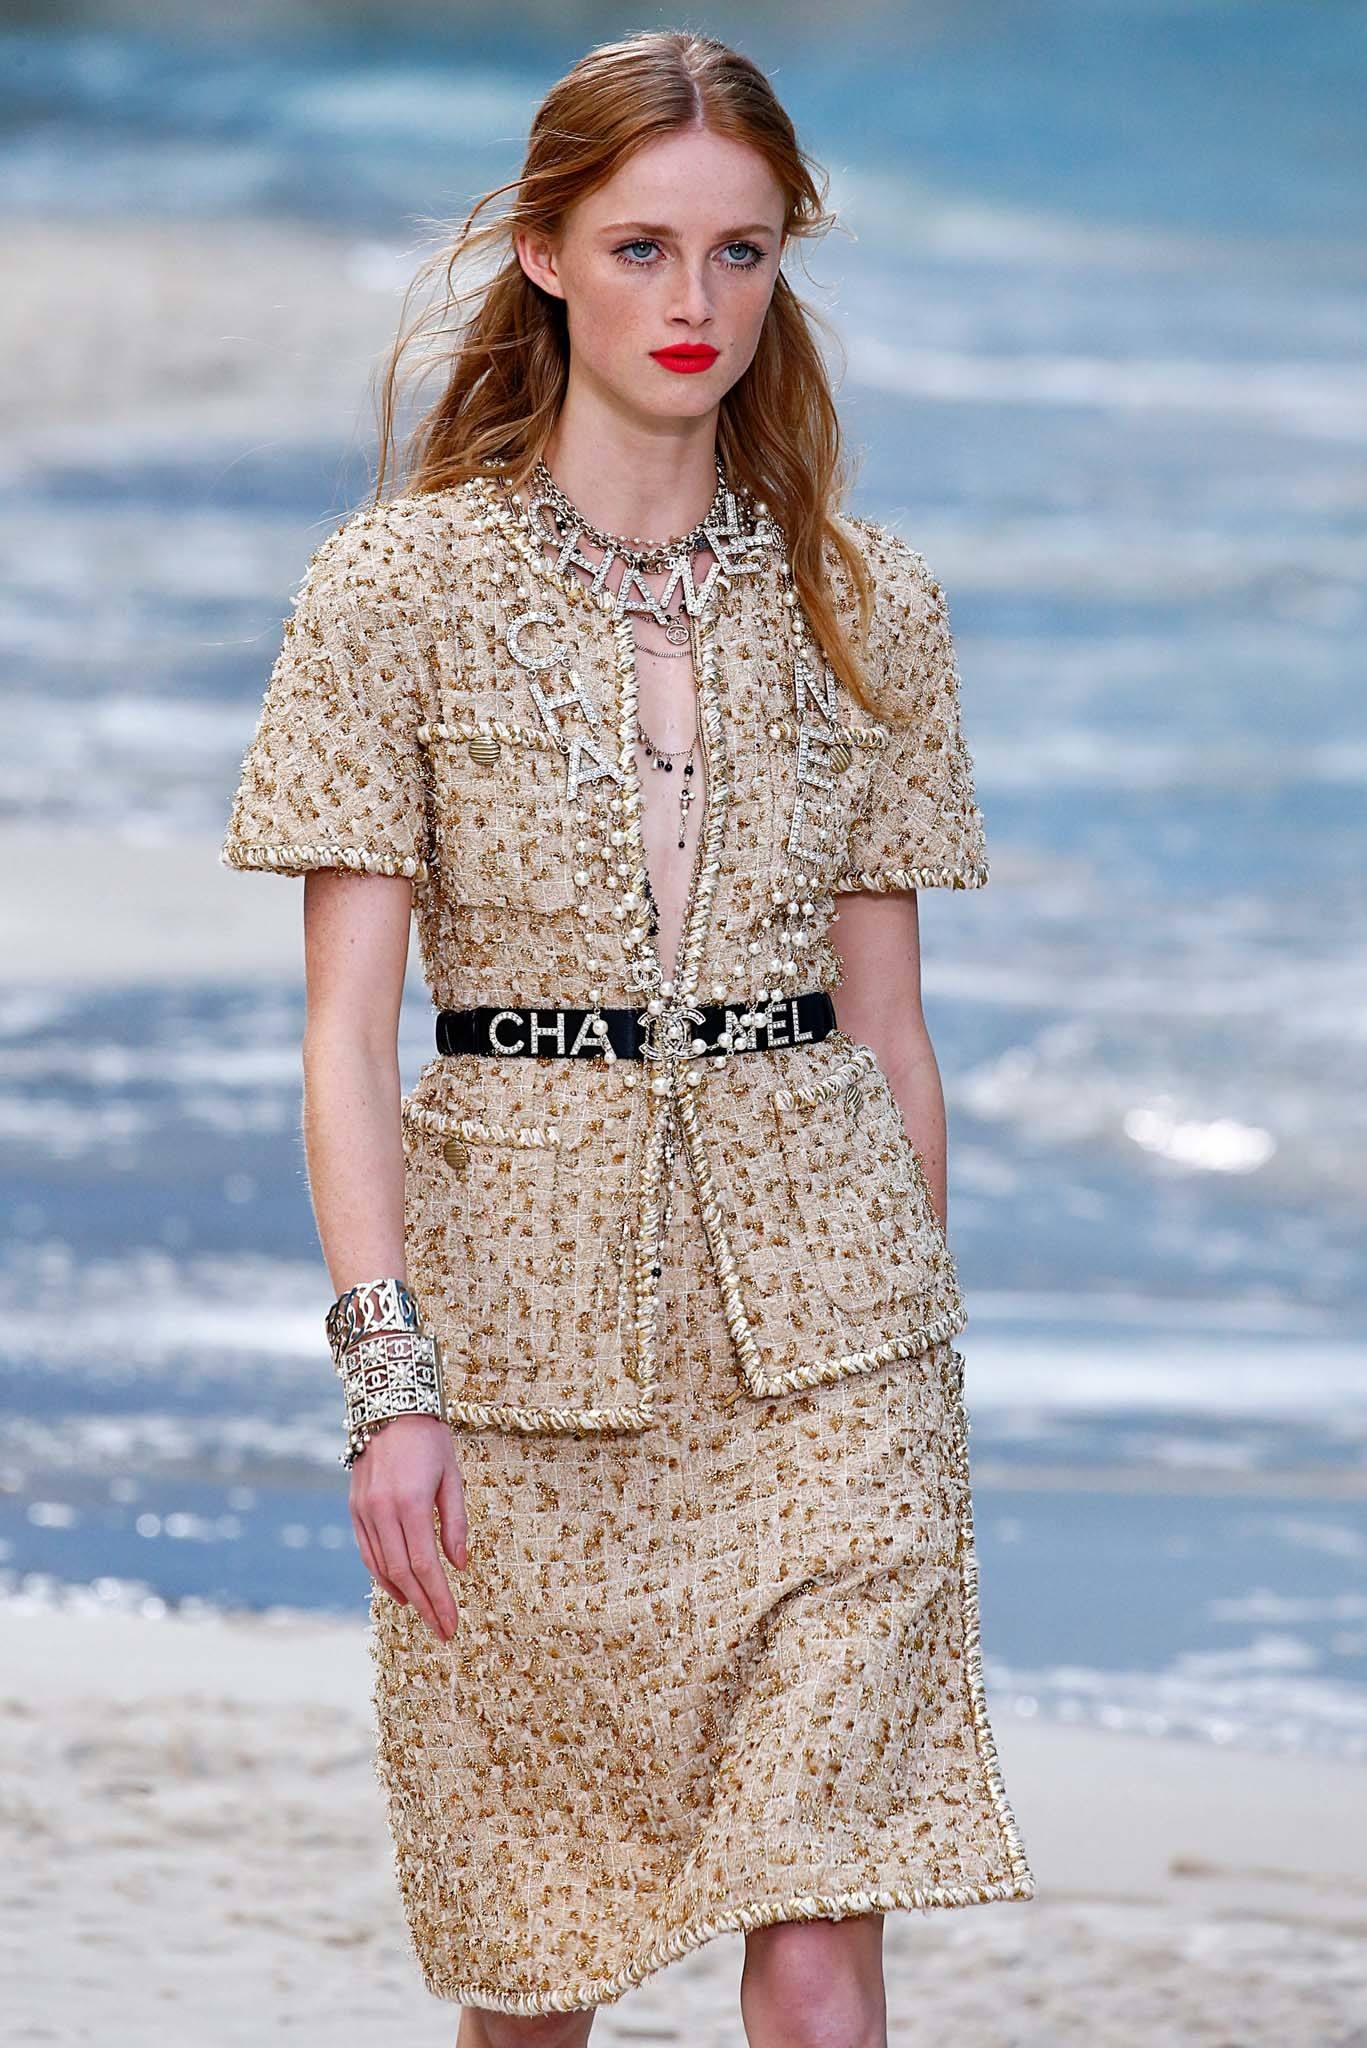 นางแบบผมยาว บีชลุค ในโชว์ Chanel Spring/Summer 2019 Haute Couture fashion ที่ Paris Fashion Week